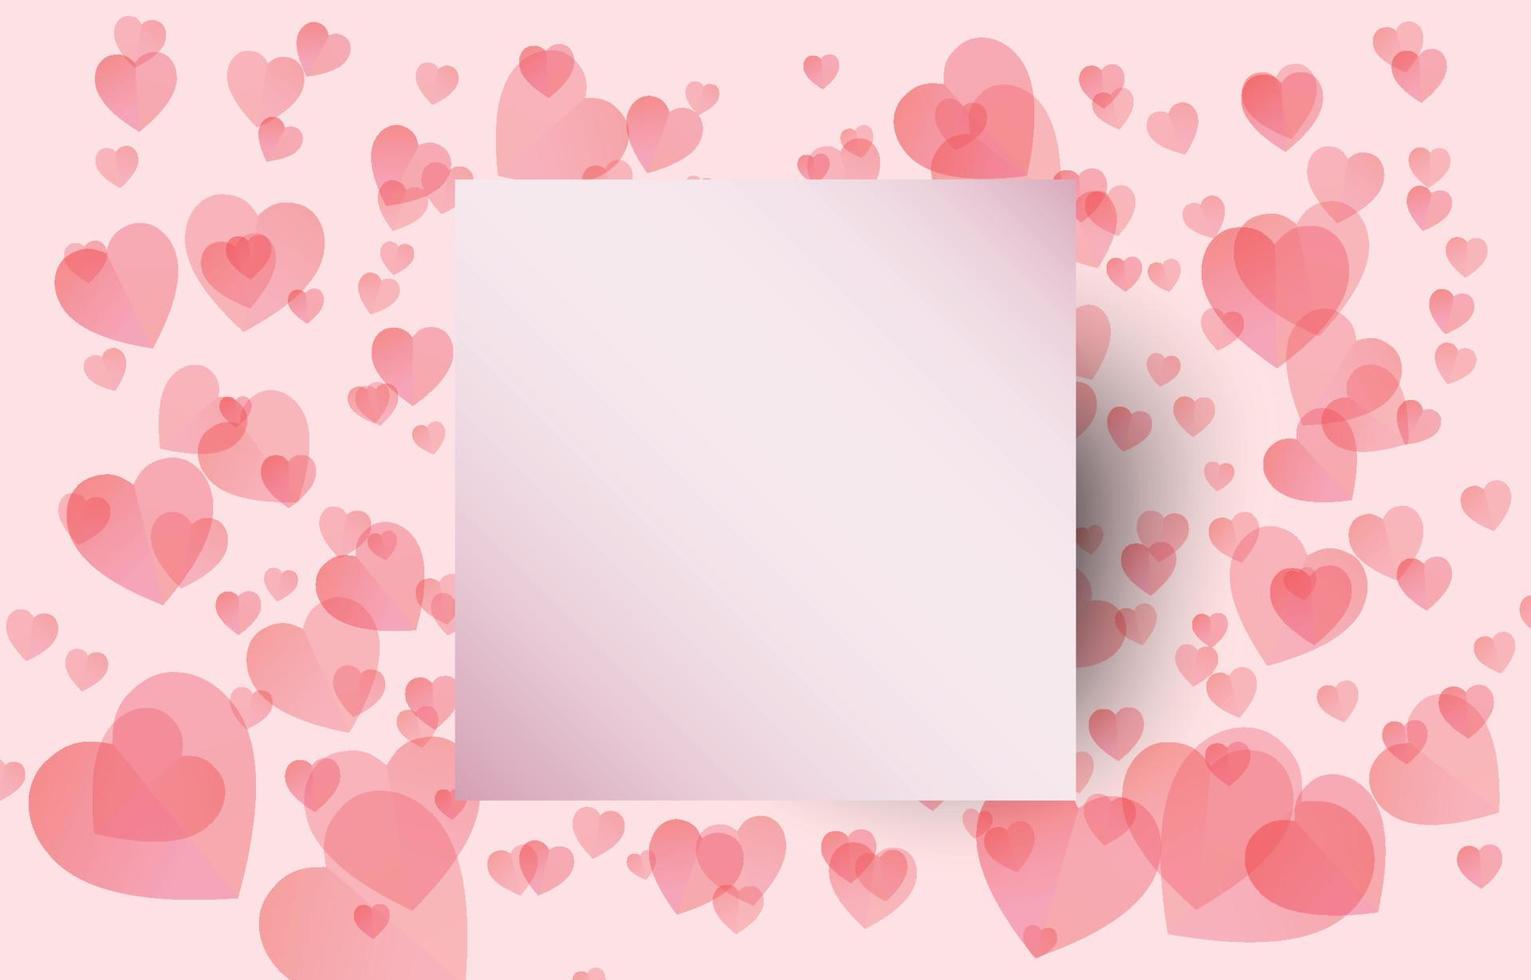 elementos de corte de papel en forma de marco cuadrado con un saludo sobre fondo de corazones rojos y dulces. símbolos vectoriales de amor por el feliz día de san valentín, diseño de tarjetas de felicitación. vector